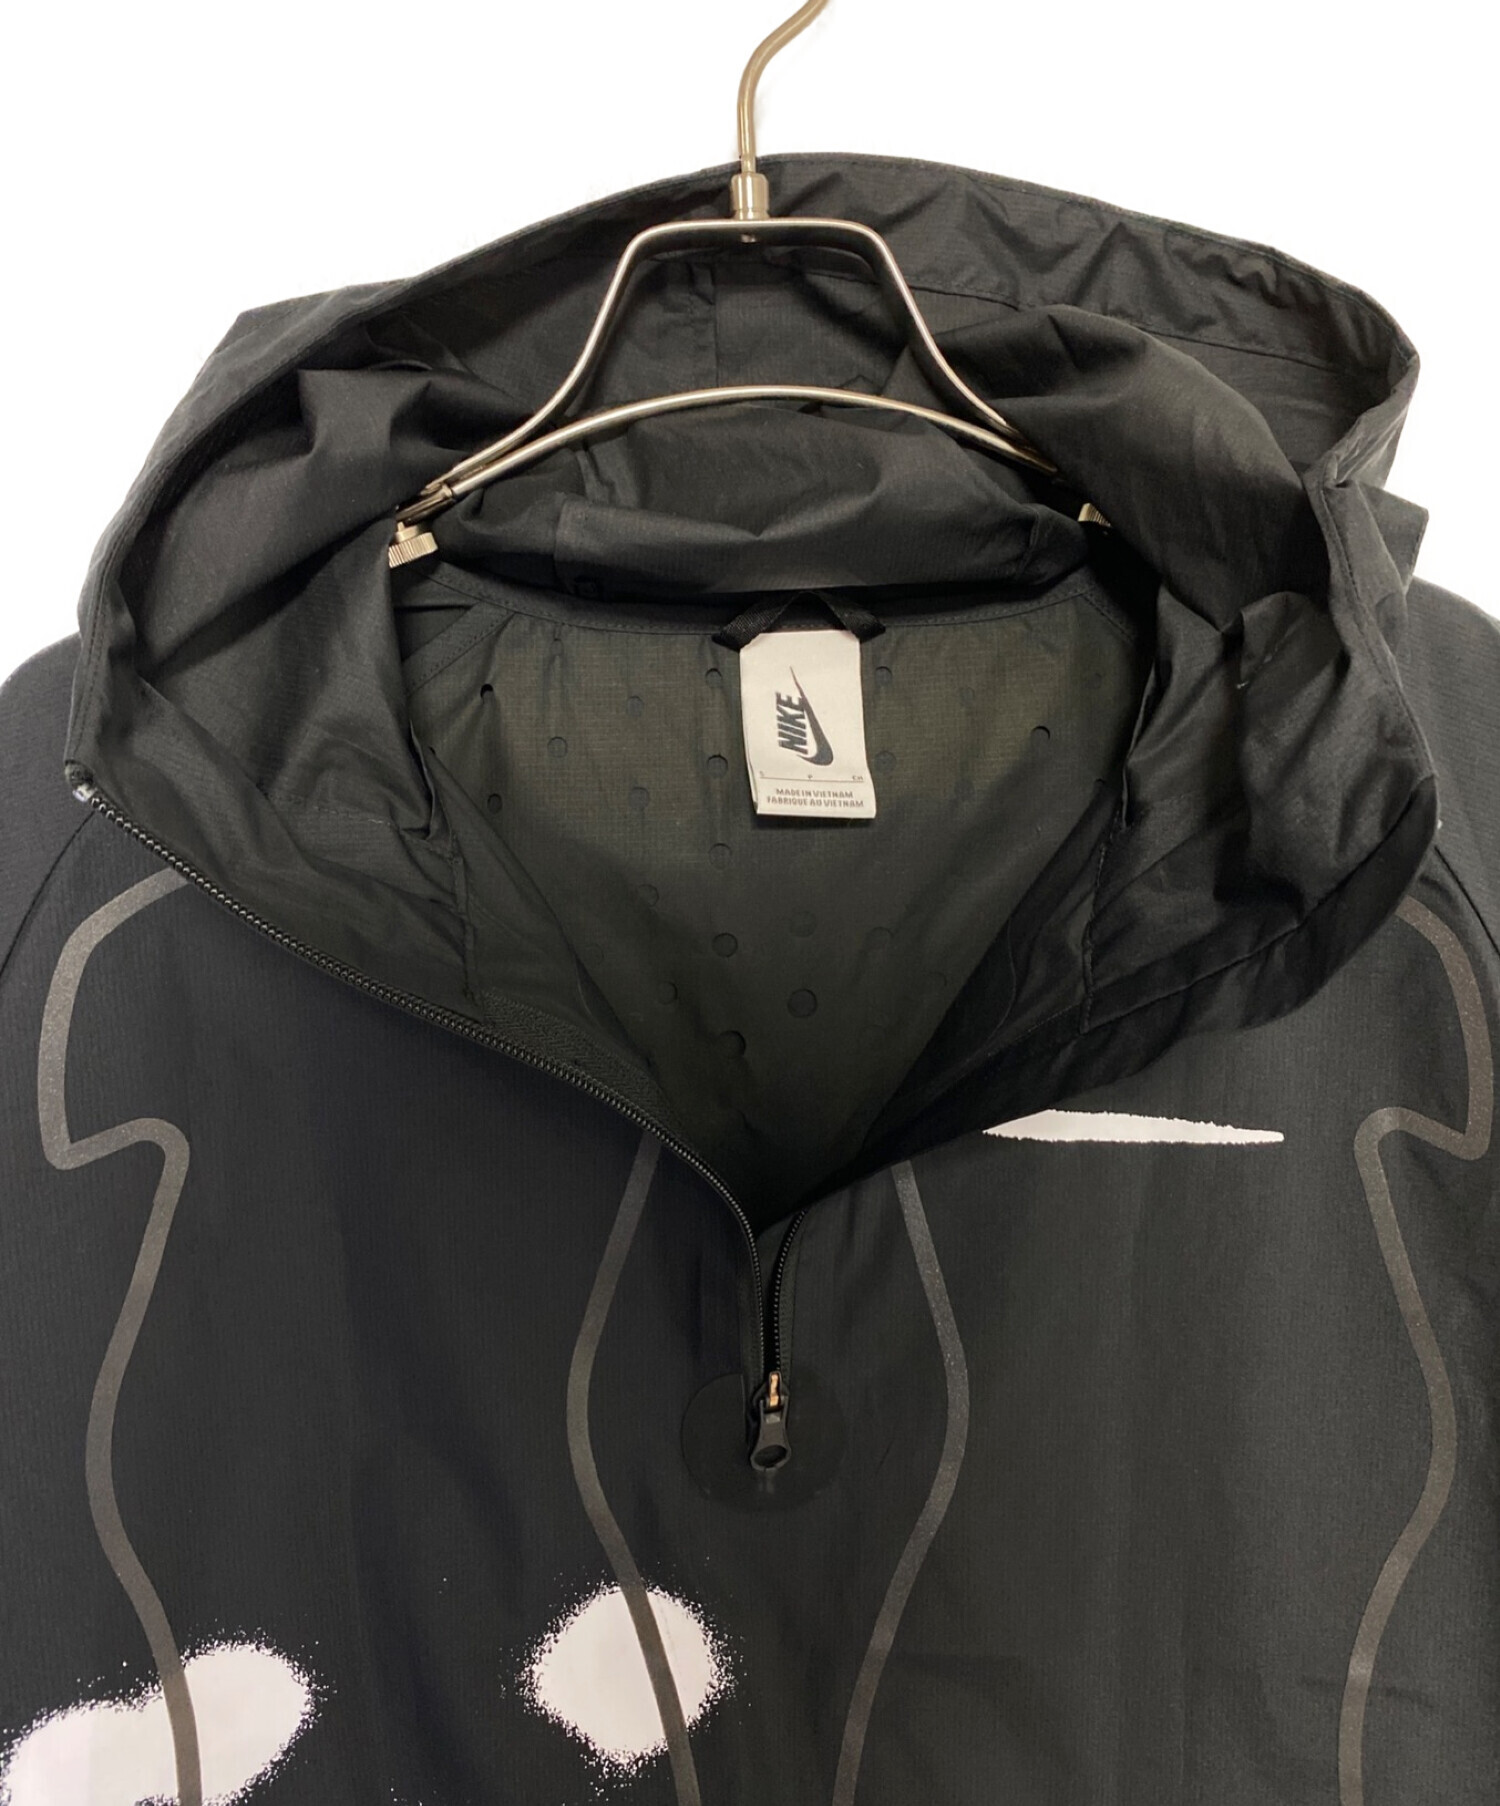 NIKE×OFF WHITE (ナイキ×オフホワイト) 空調服ジャケット ブラック×ホワイト サイズ:S